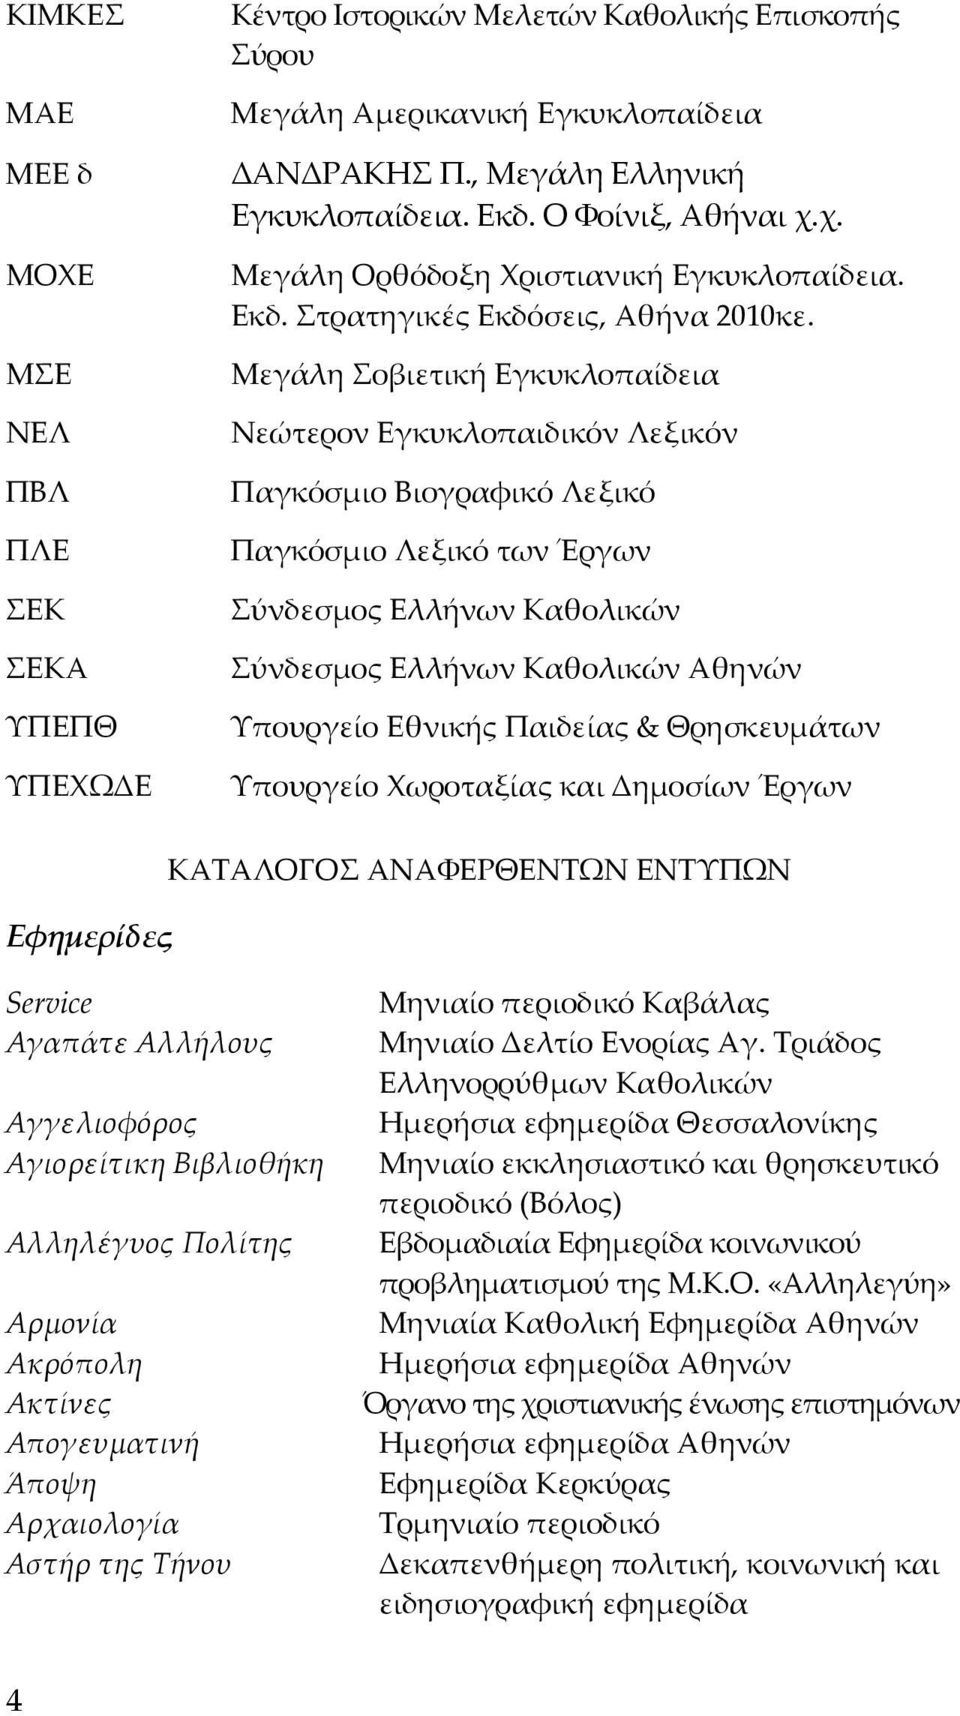 Μεγάλη Σοβιετική Εγκυκλοπαίδεια Νεώτερον Εγκυκλοπαιδικόν Λεξικόν Παγκόσμιο Βιογραφικό Λεξικό Παγκόσμιο Λεξικό των Έργων Σύνδεσμος Ελλήνων Καθολικών Σύνδεσμος Ελλήνων Καθολικών Αθηνών Υπουργείο